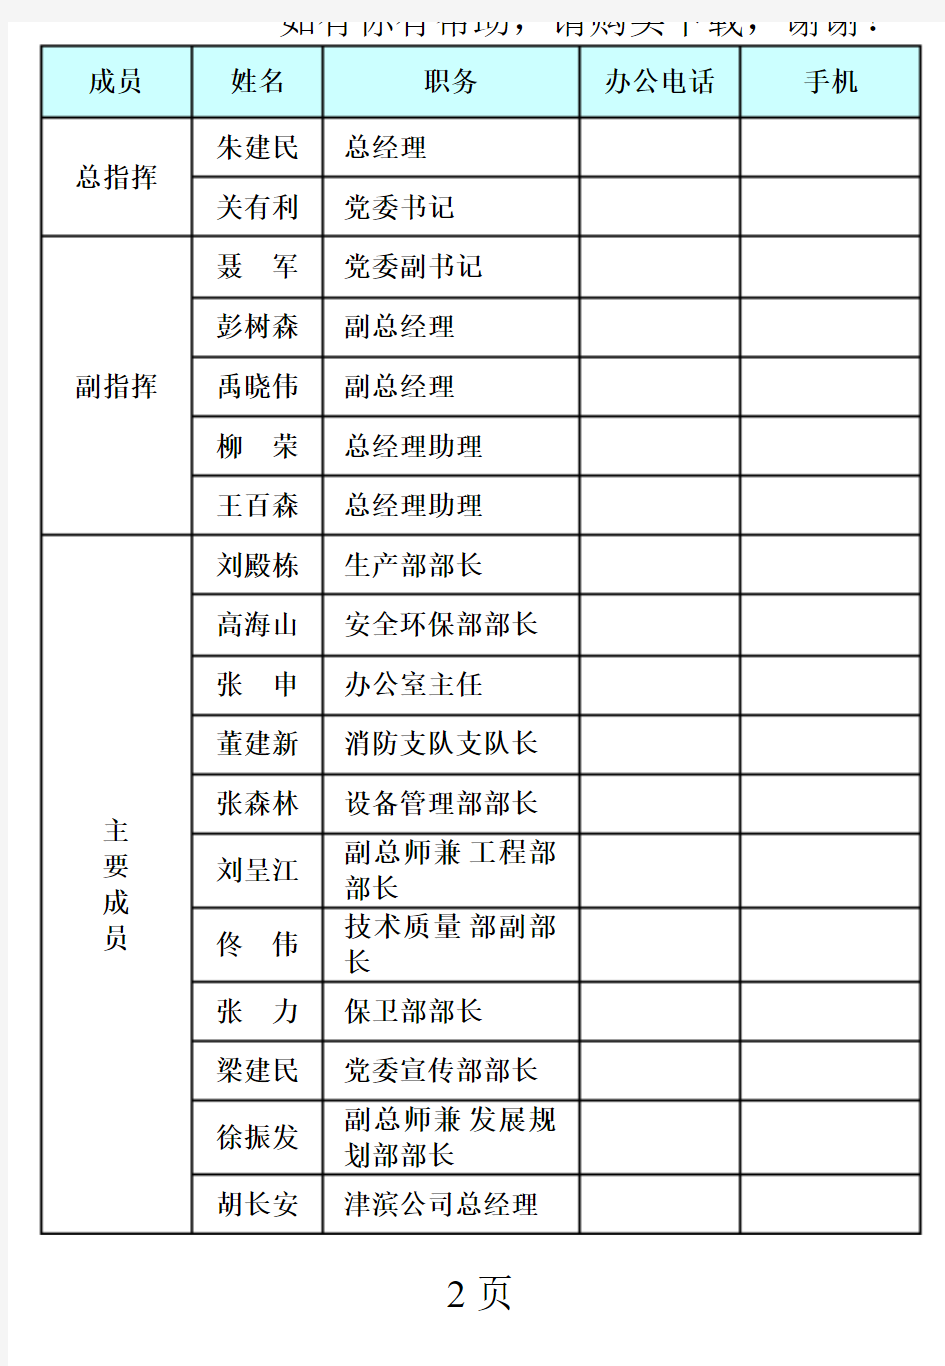 天津石化公司生产安全事故应急处置卡